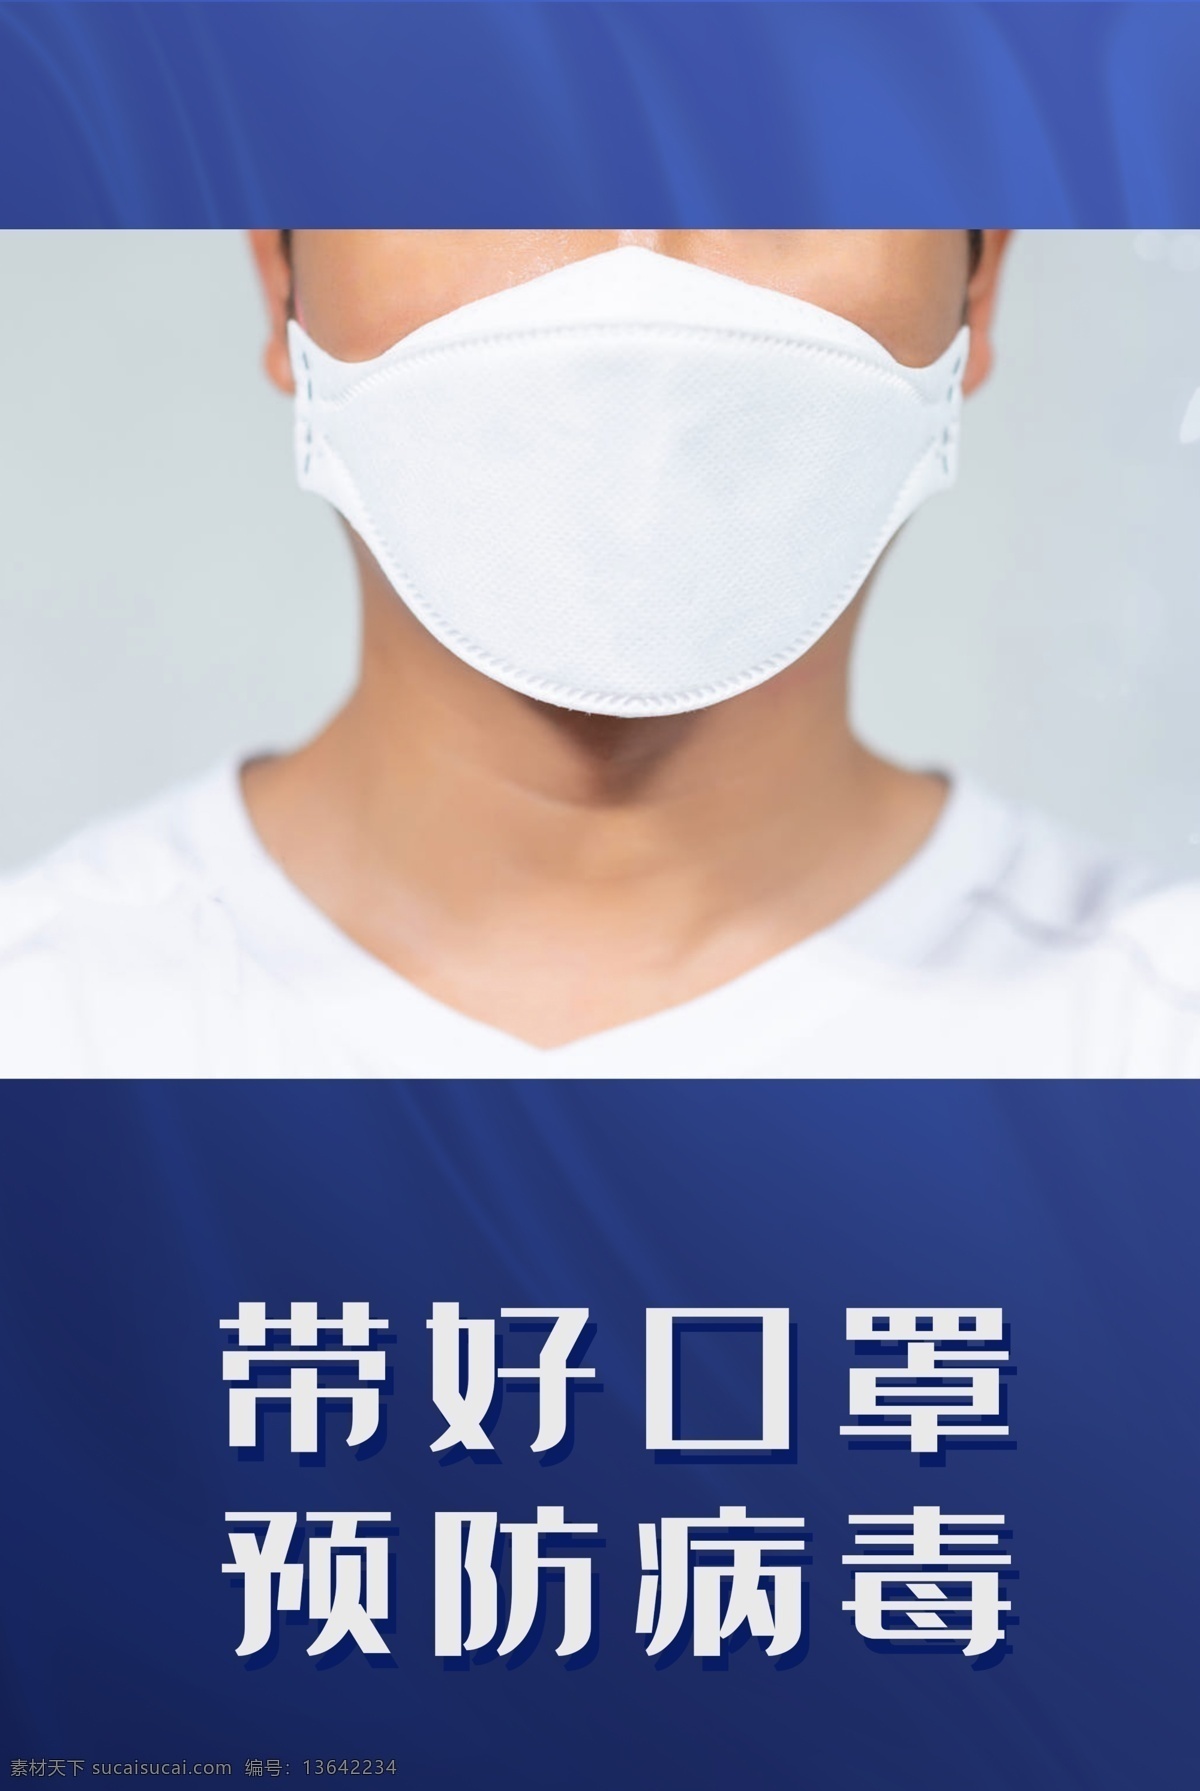 防疫海报图片 防疫 口罩 预防病毒 新冠海报 戴口罩 分层 可编辑 海报